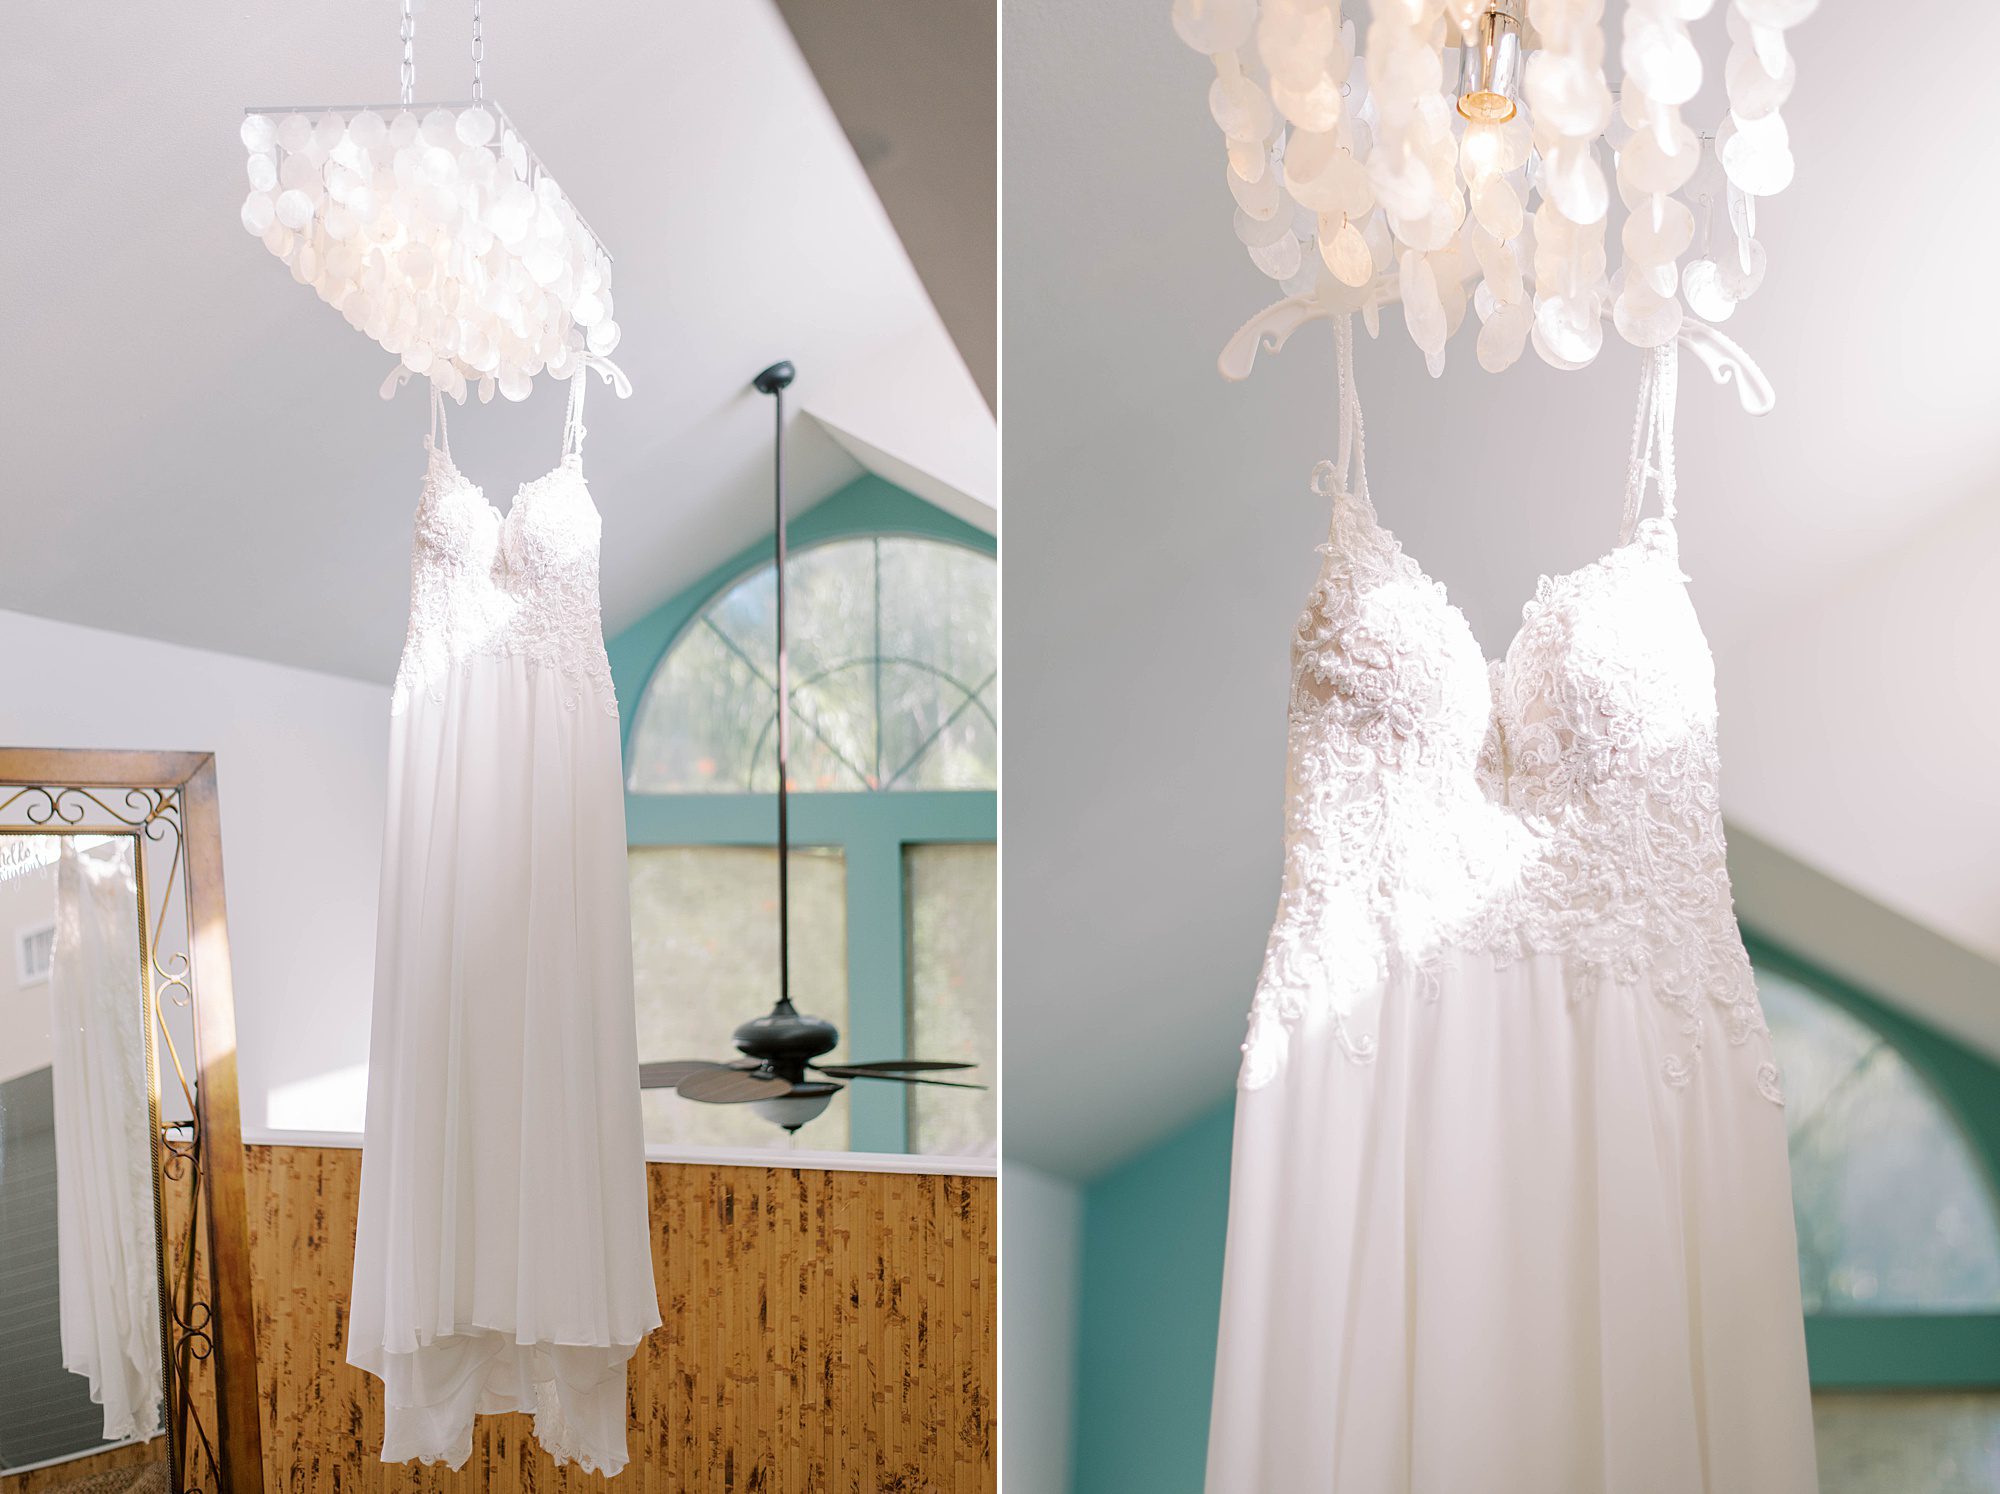 bride's wedding dress hangs from chandelier